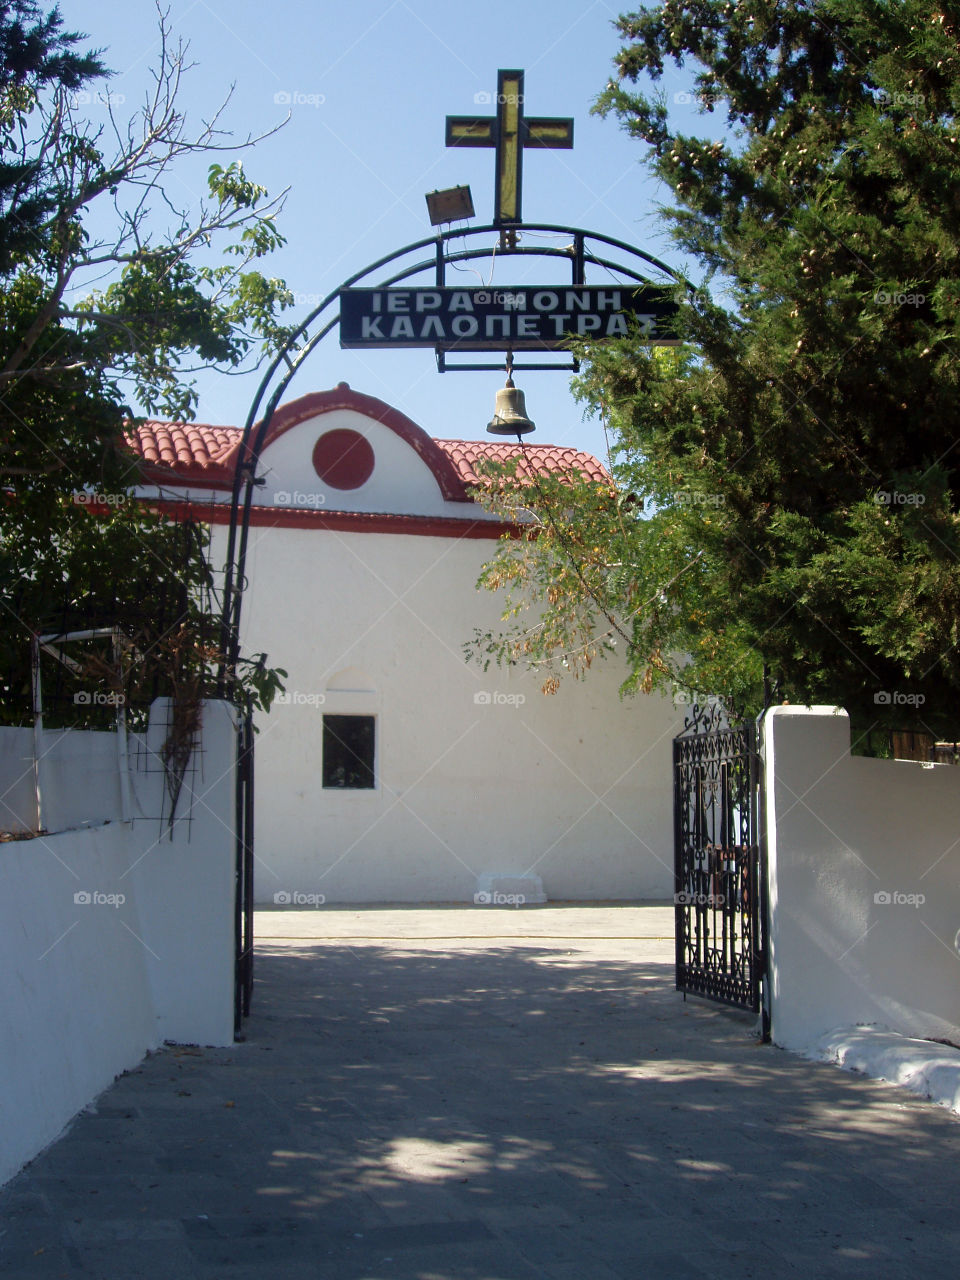 Monastery Entrance - Greece